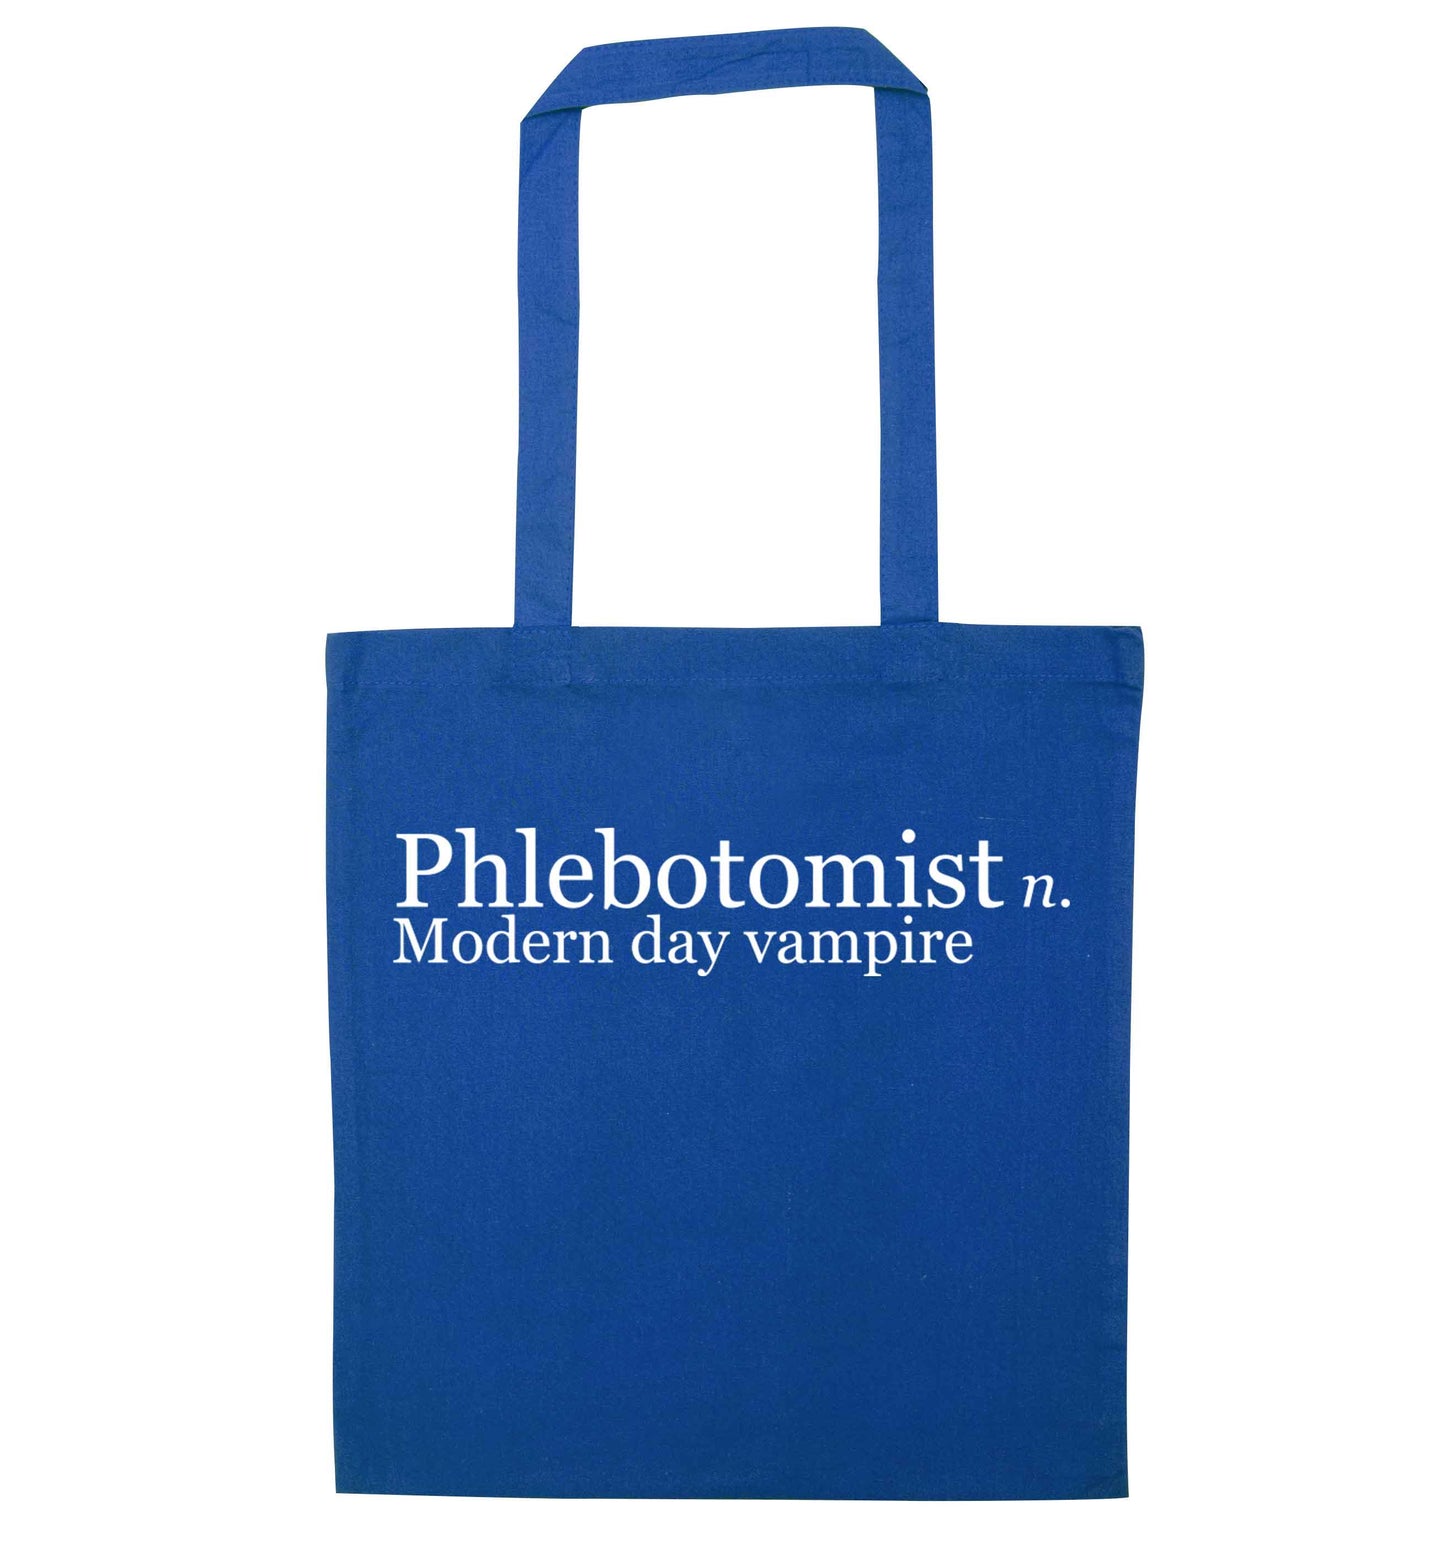 Phlebotomist - Modern day vampire blue tote bag